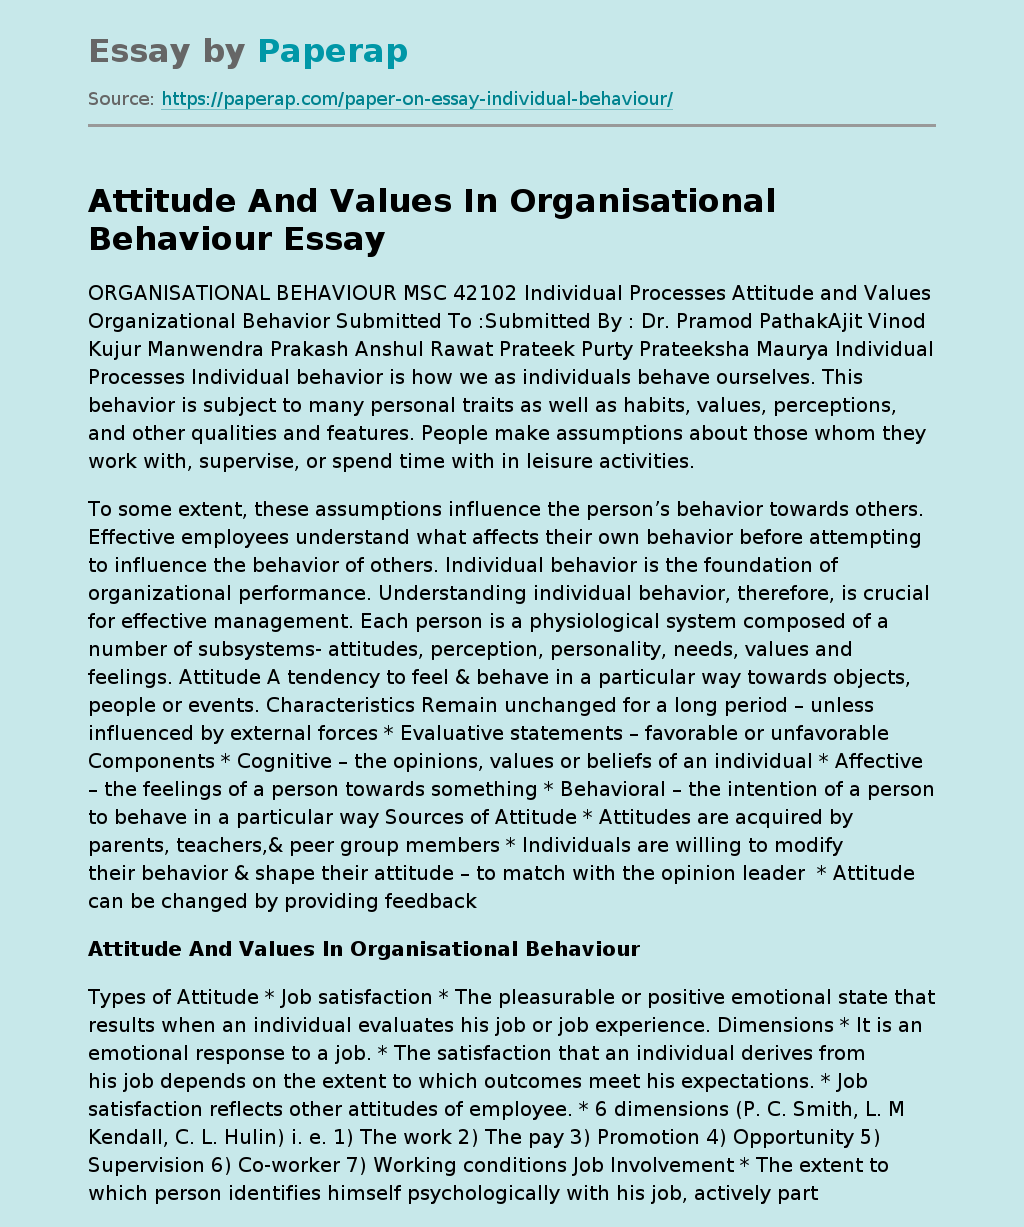 Attitude And Values In Organisational Behaviour